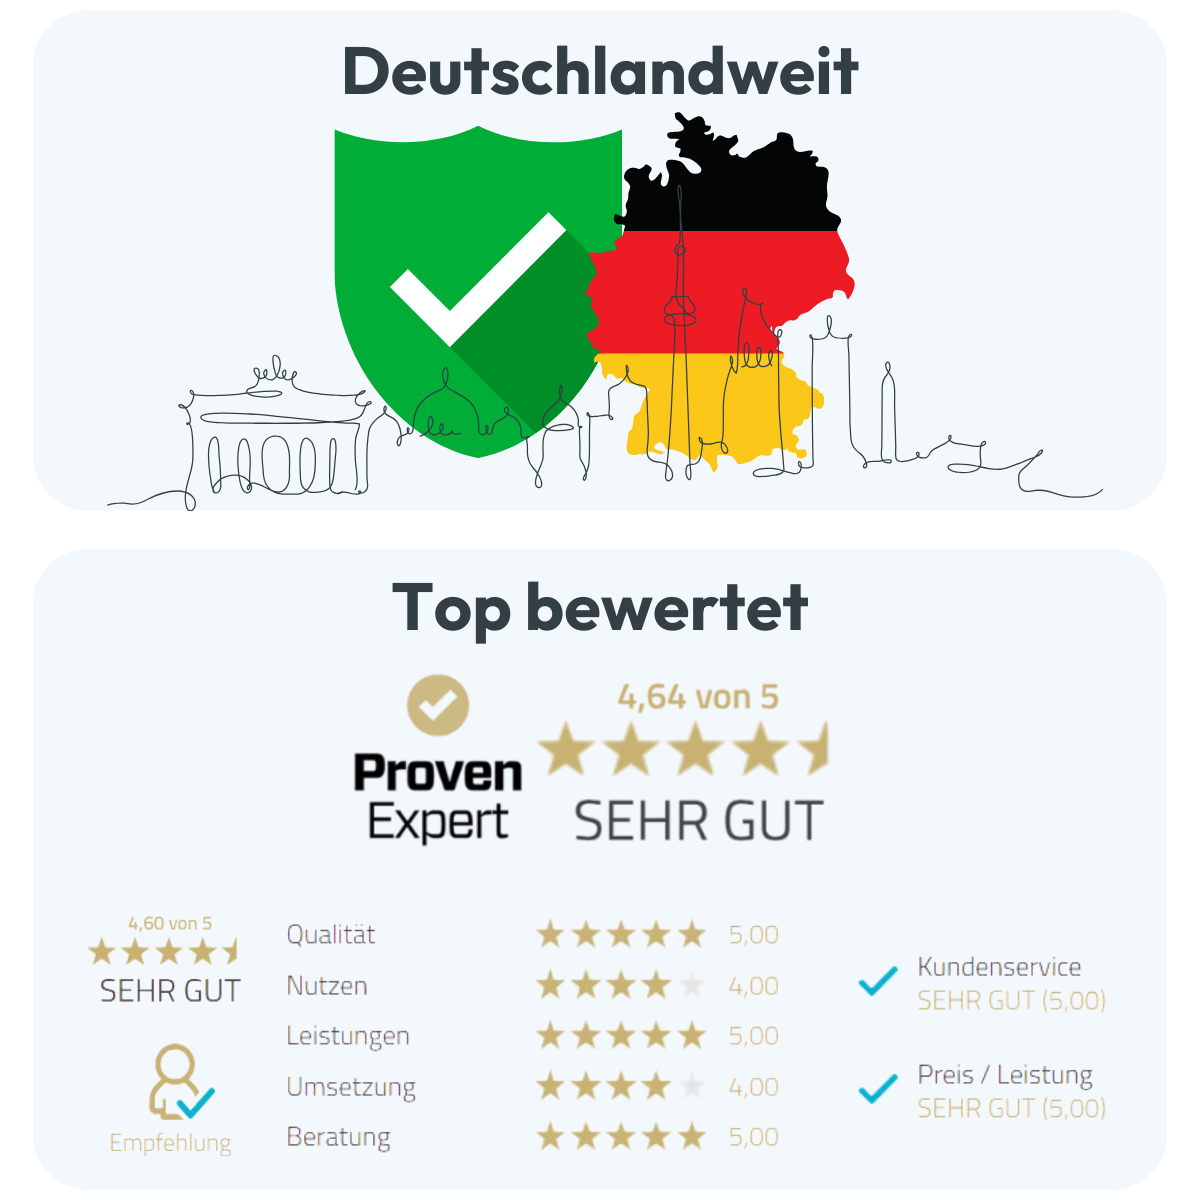 Top bewertet in Deutschland